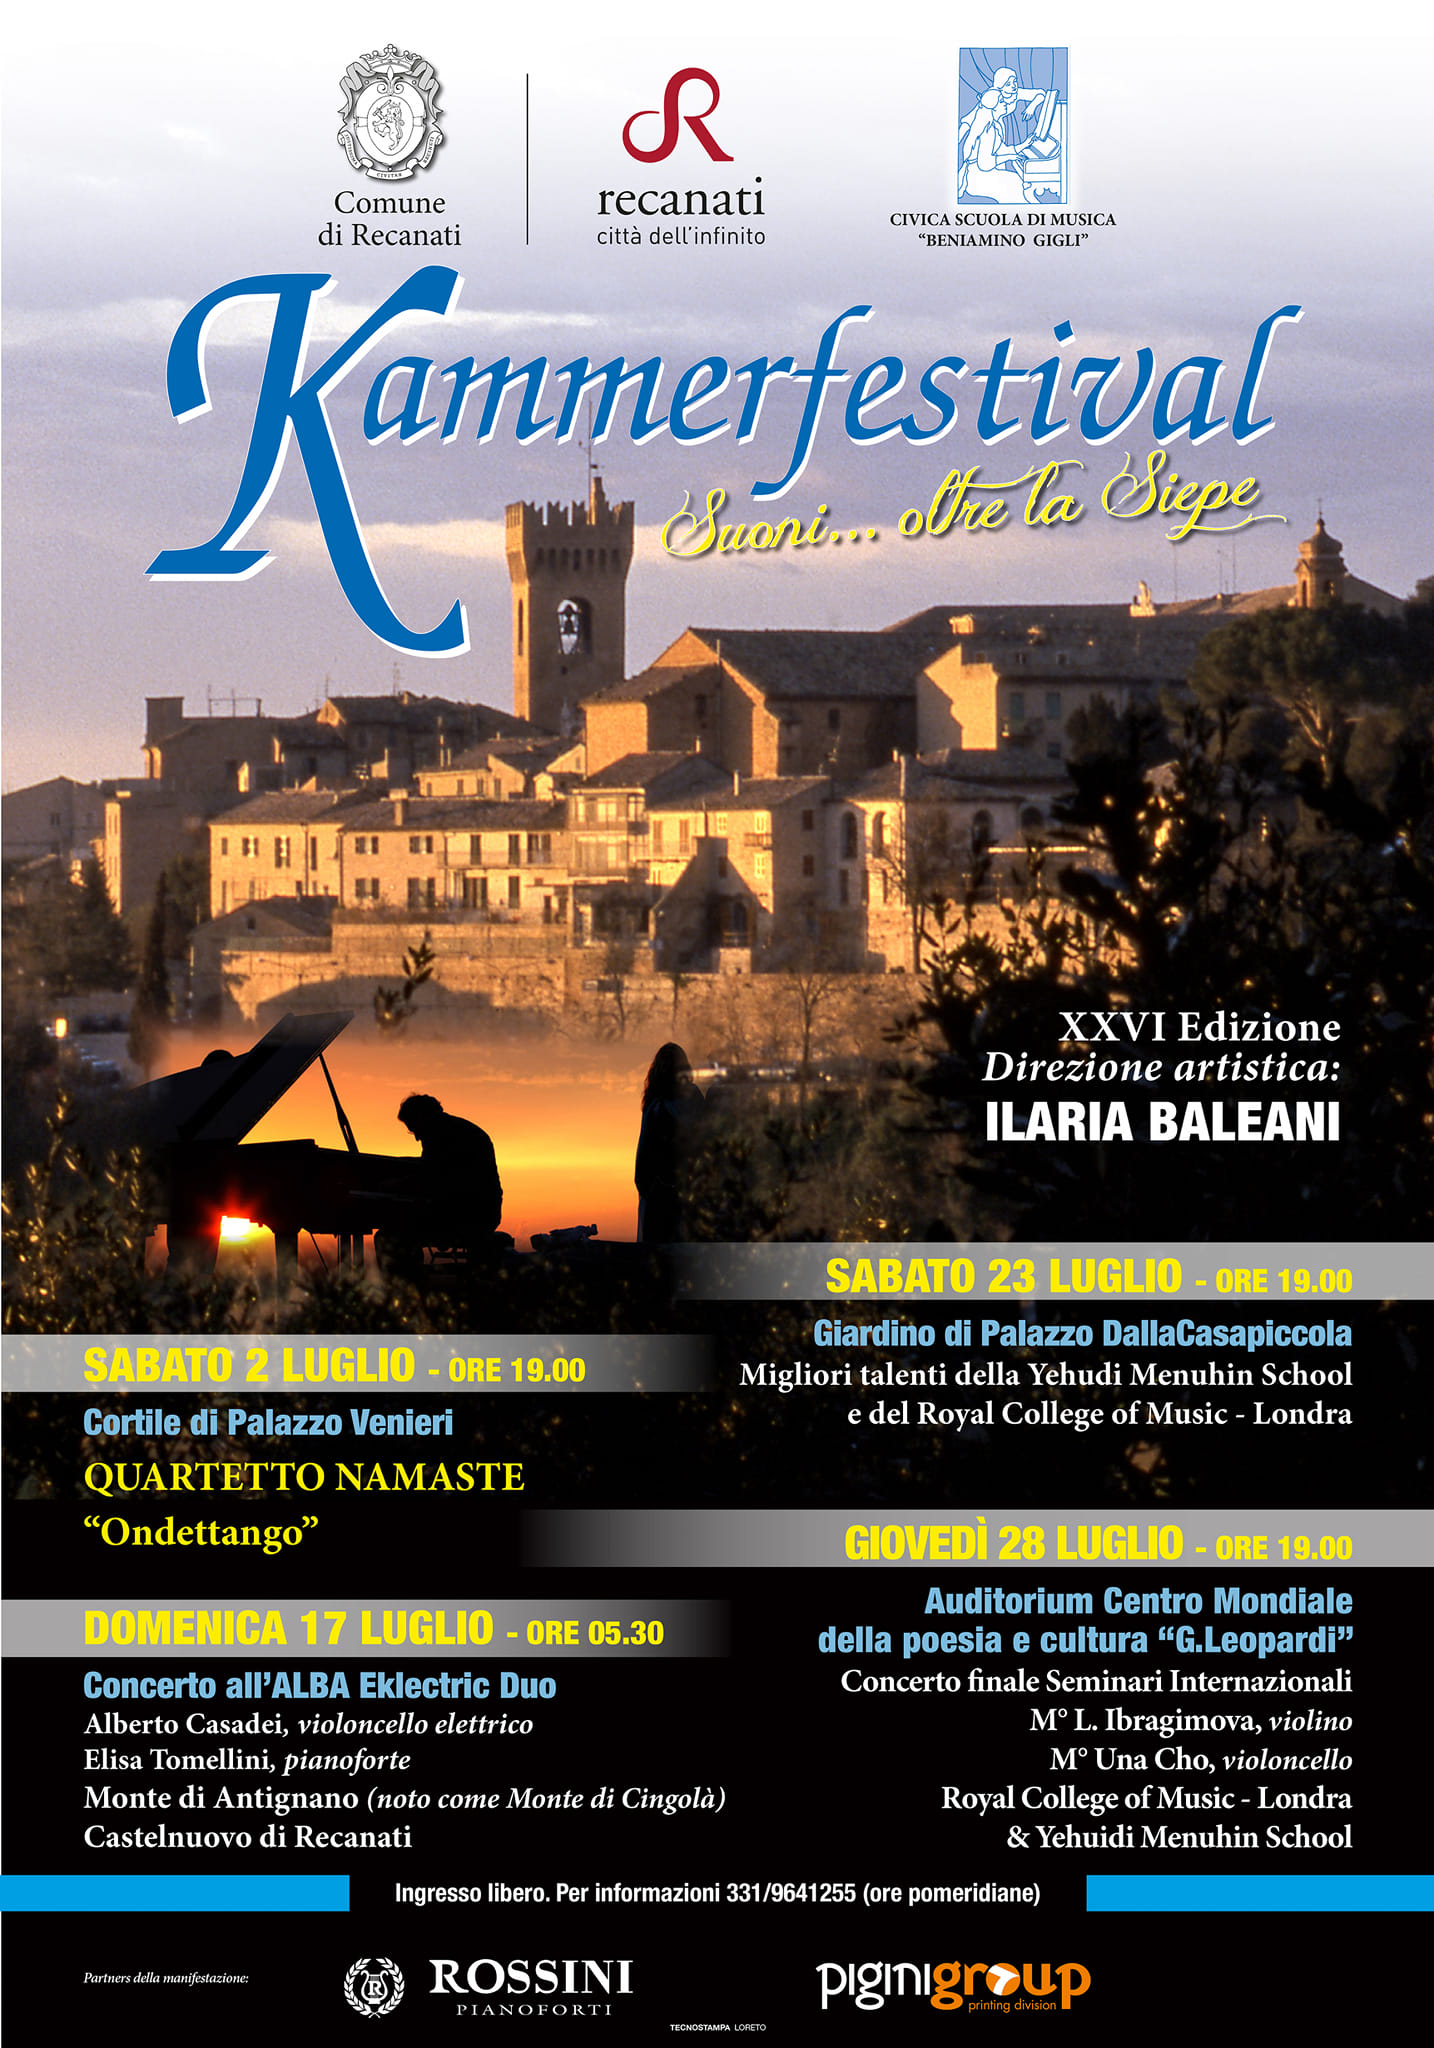 Kammer festival totale